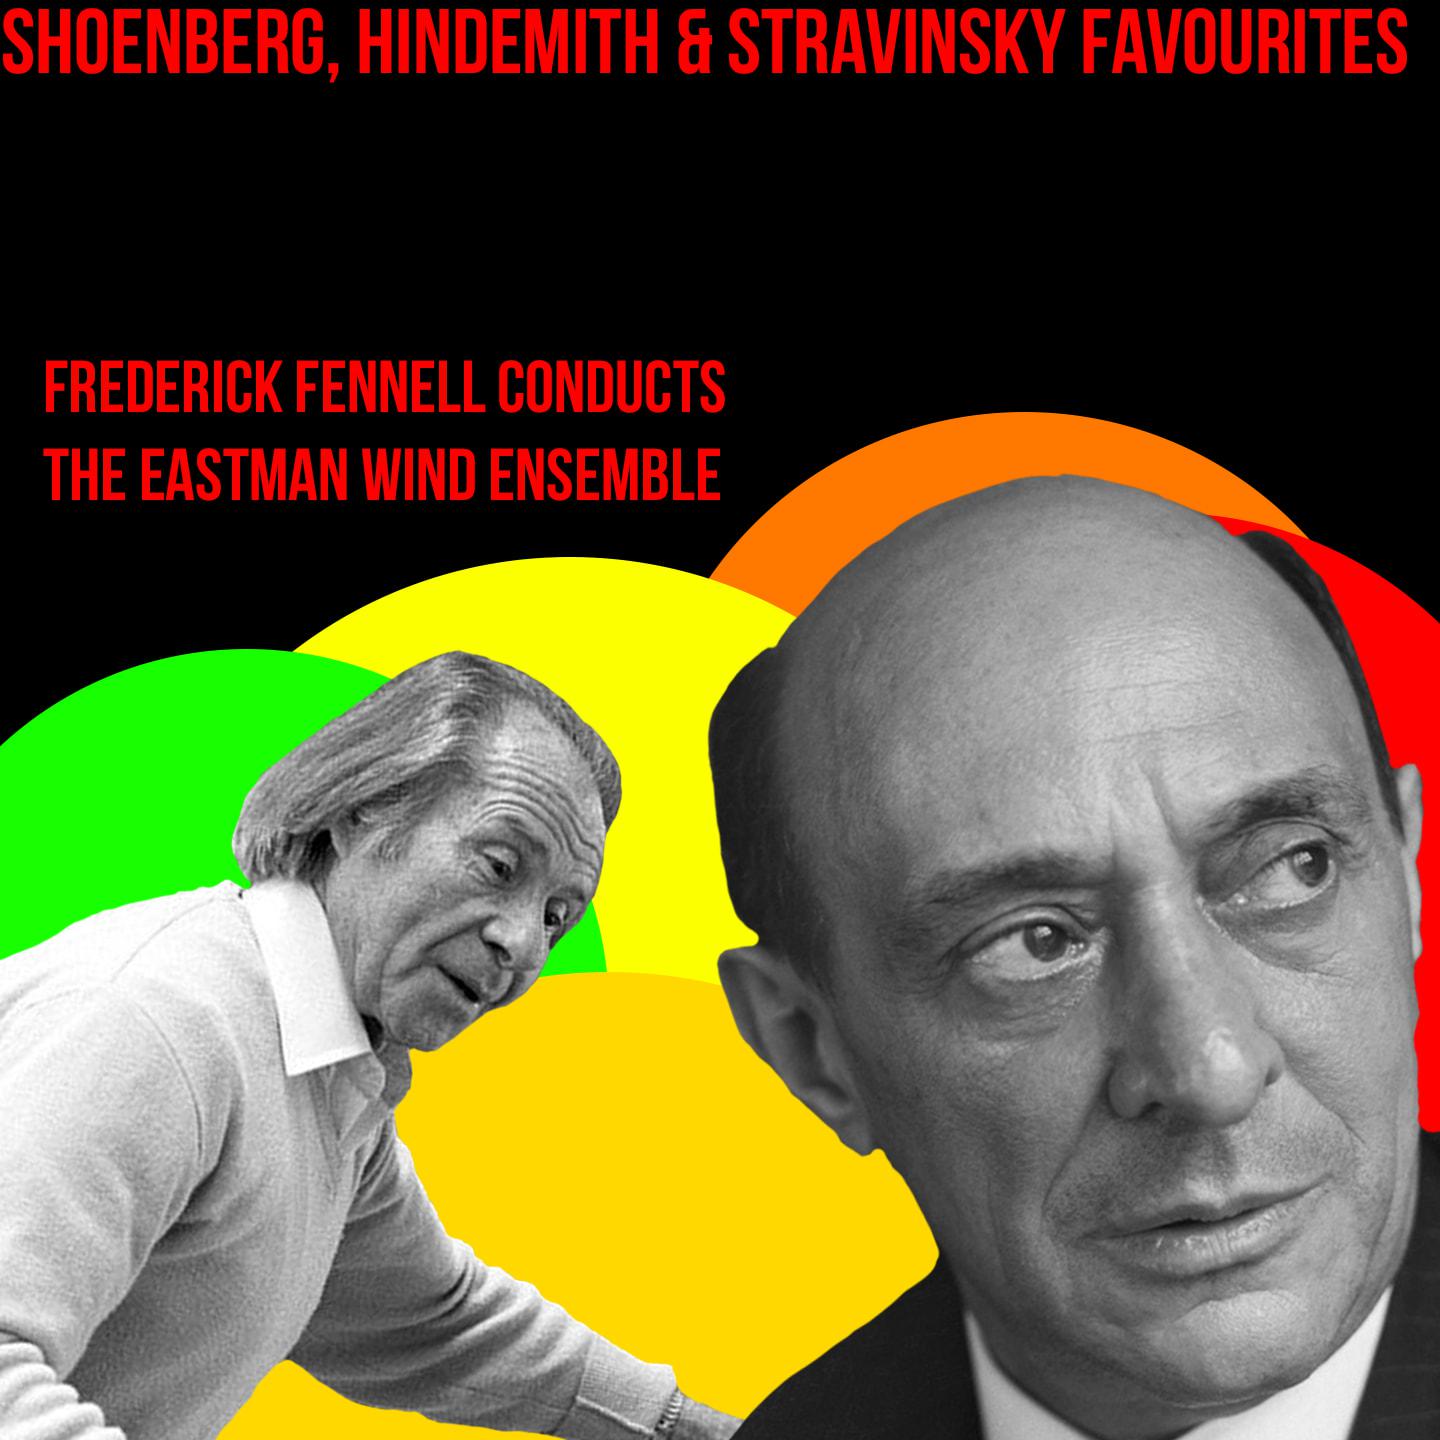 Schoenberg, Hindemith & Stravinsky Favourites